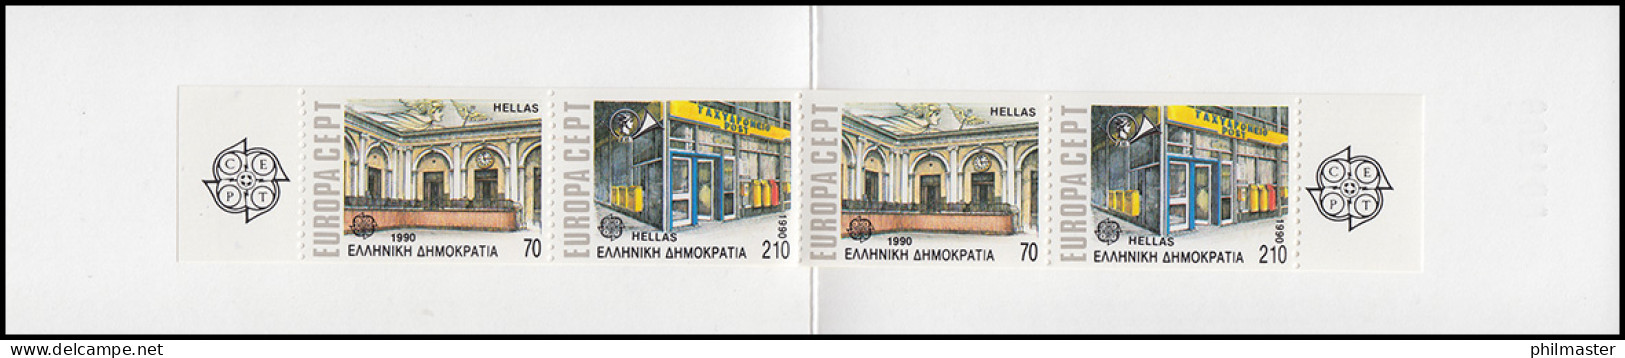 Griechenland Markenheftchen 13 Europa 1990, ** Postfrisch - Libretti